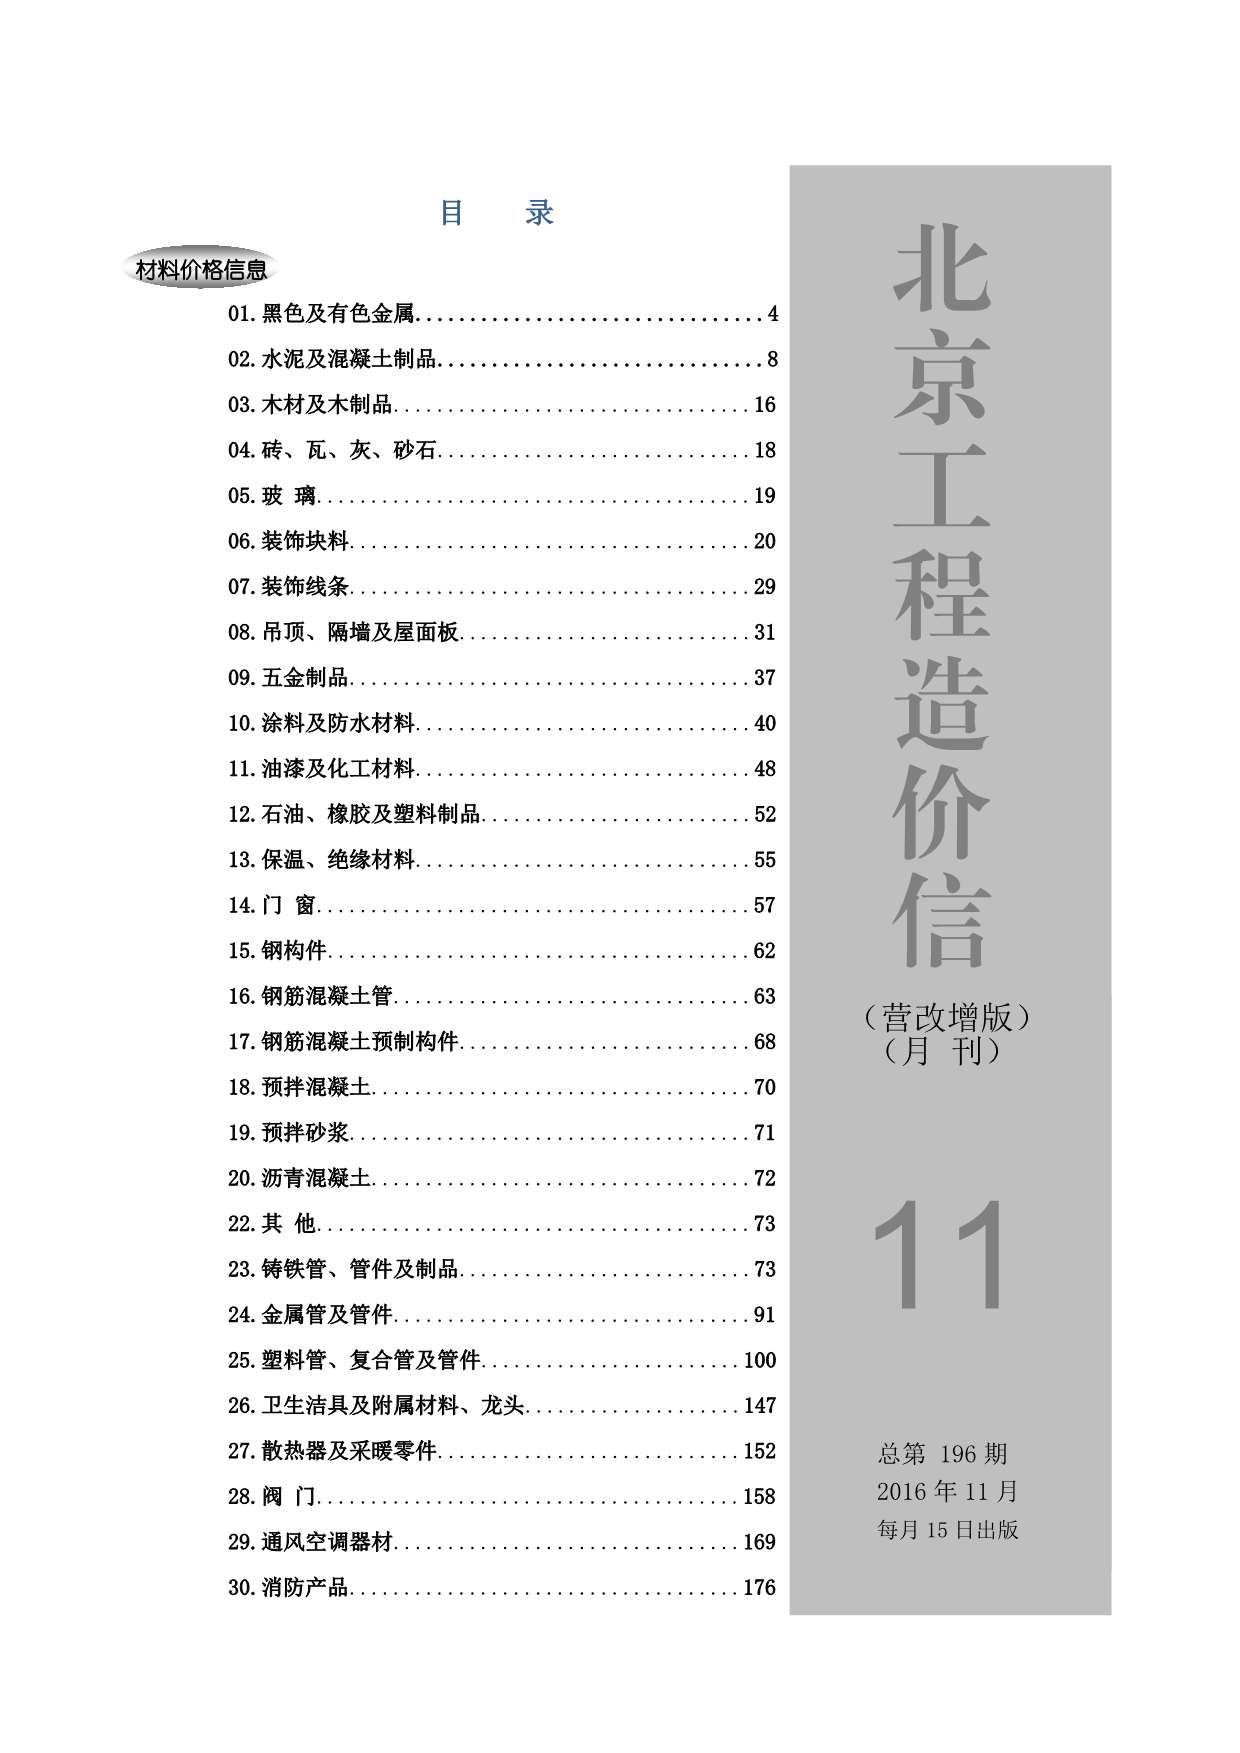 北京市2016年11月工程信息价_北京市信息价期刊PDF扫描件电子版